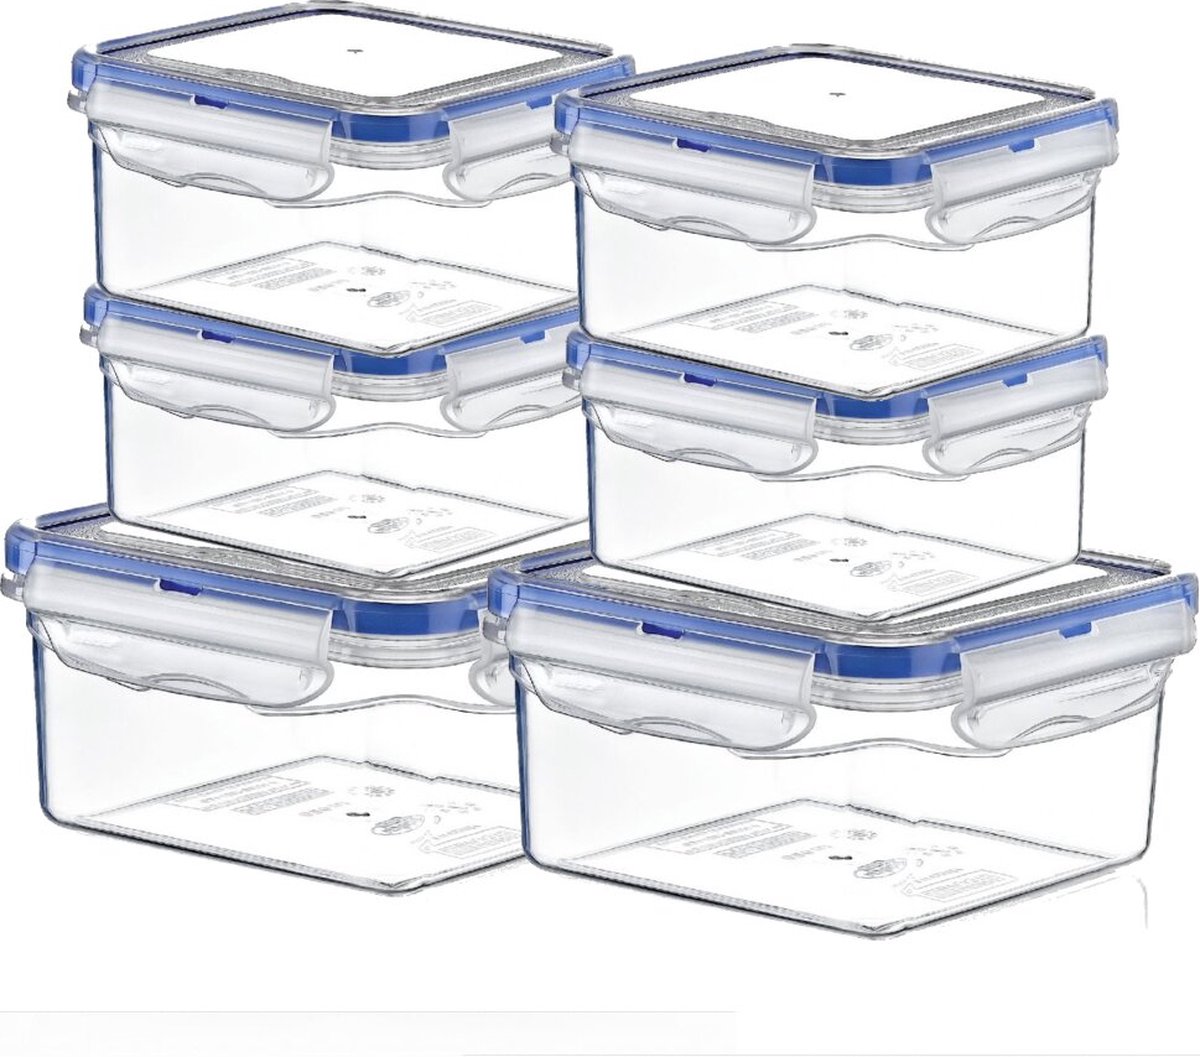 TronicXL 6 stuks vershouddoos bewaardoos set met kliksluiting luchtdicht opbergdoos box container keukenvaatwasser bestendig